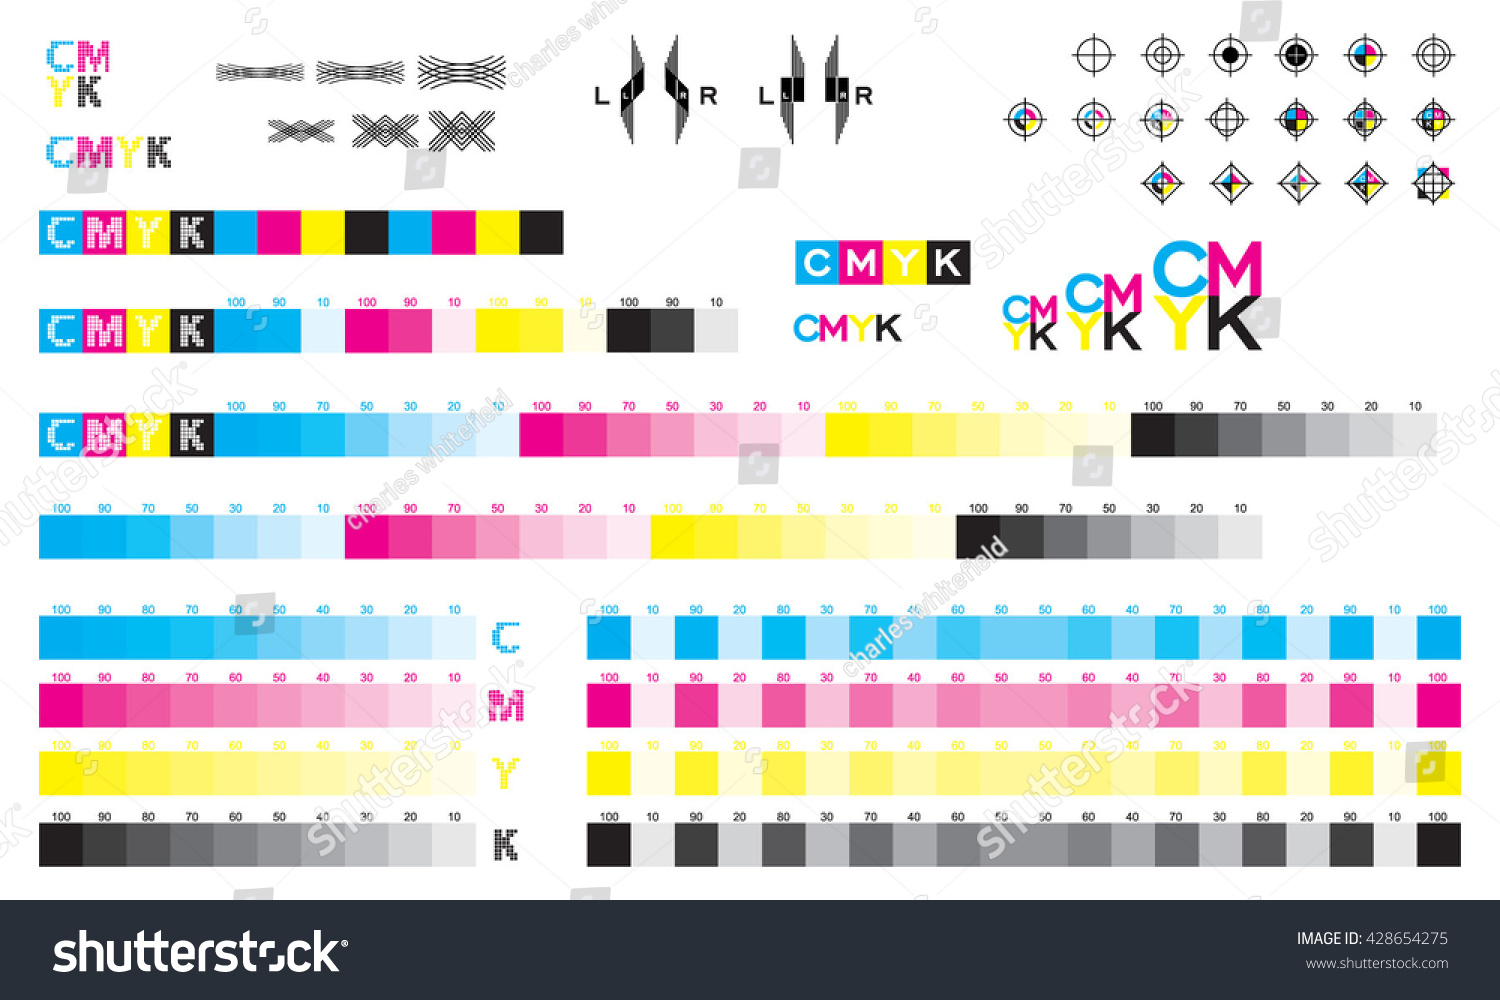 SVG of CMYK press marks color bar svg